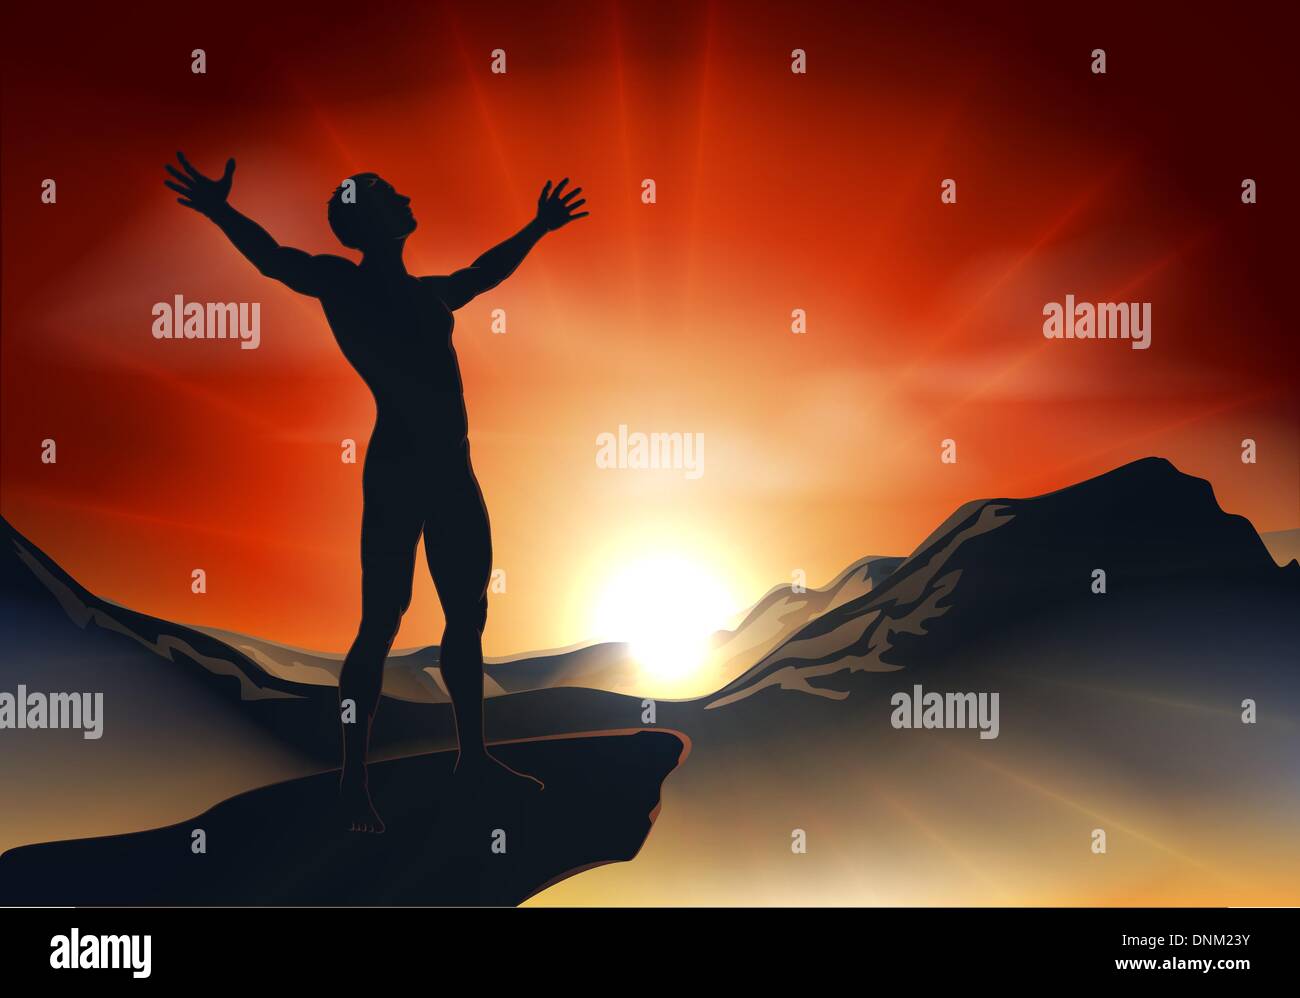 Illustrazione di un uomo su una montagna o in cima alla scogliera con braccia all'alba o al tramonto con luce sunburst Illustrazione Vettoriale